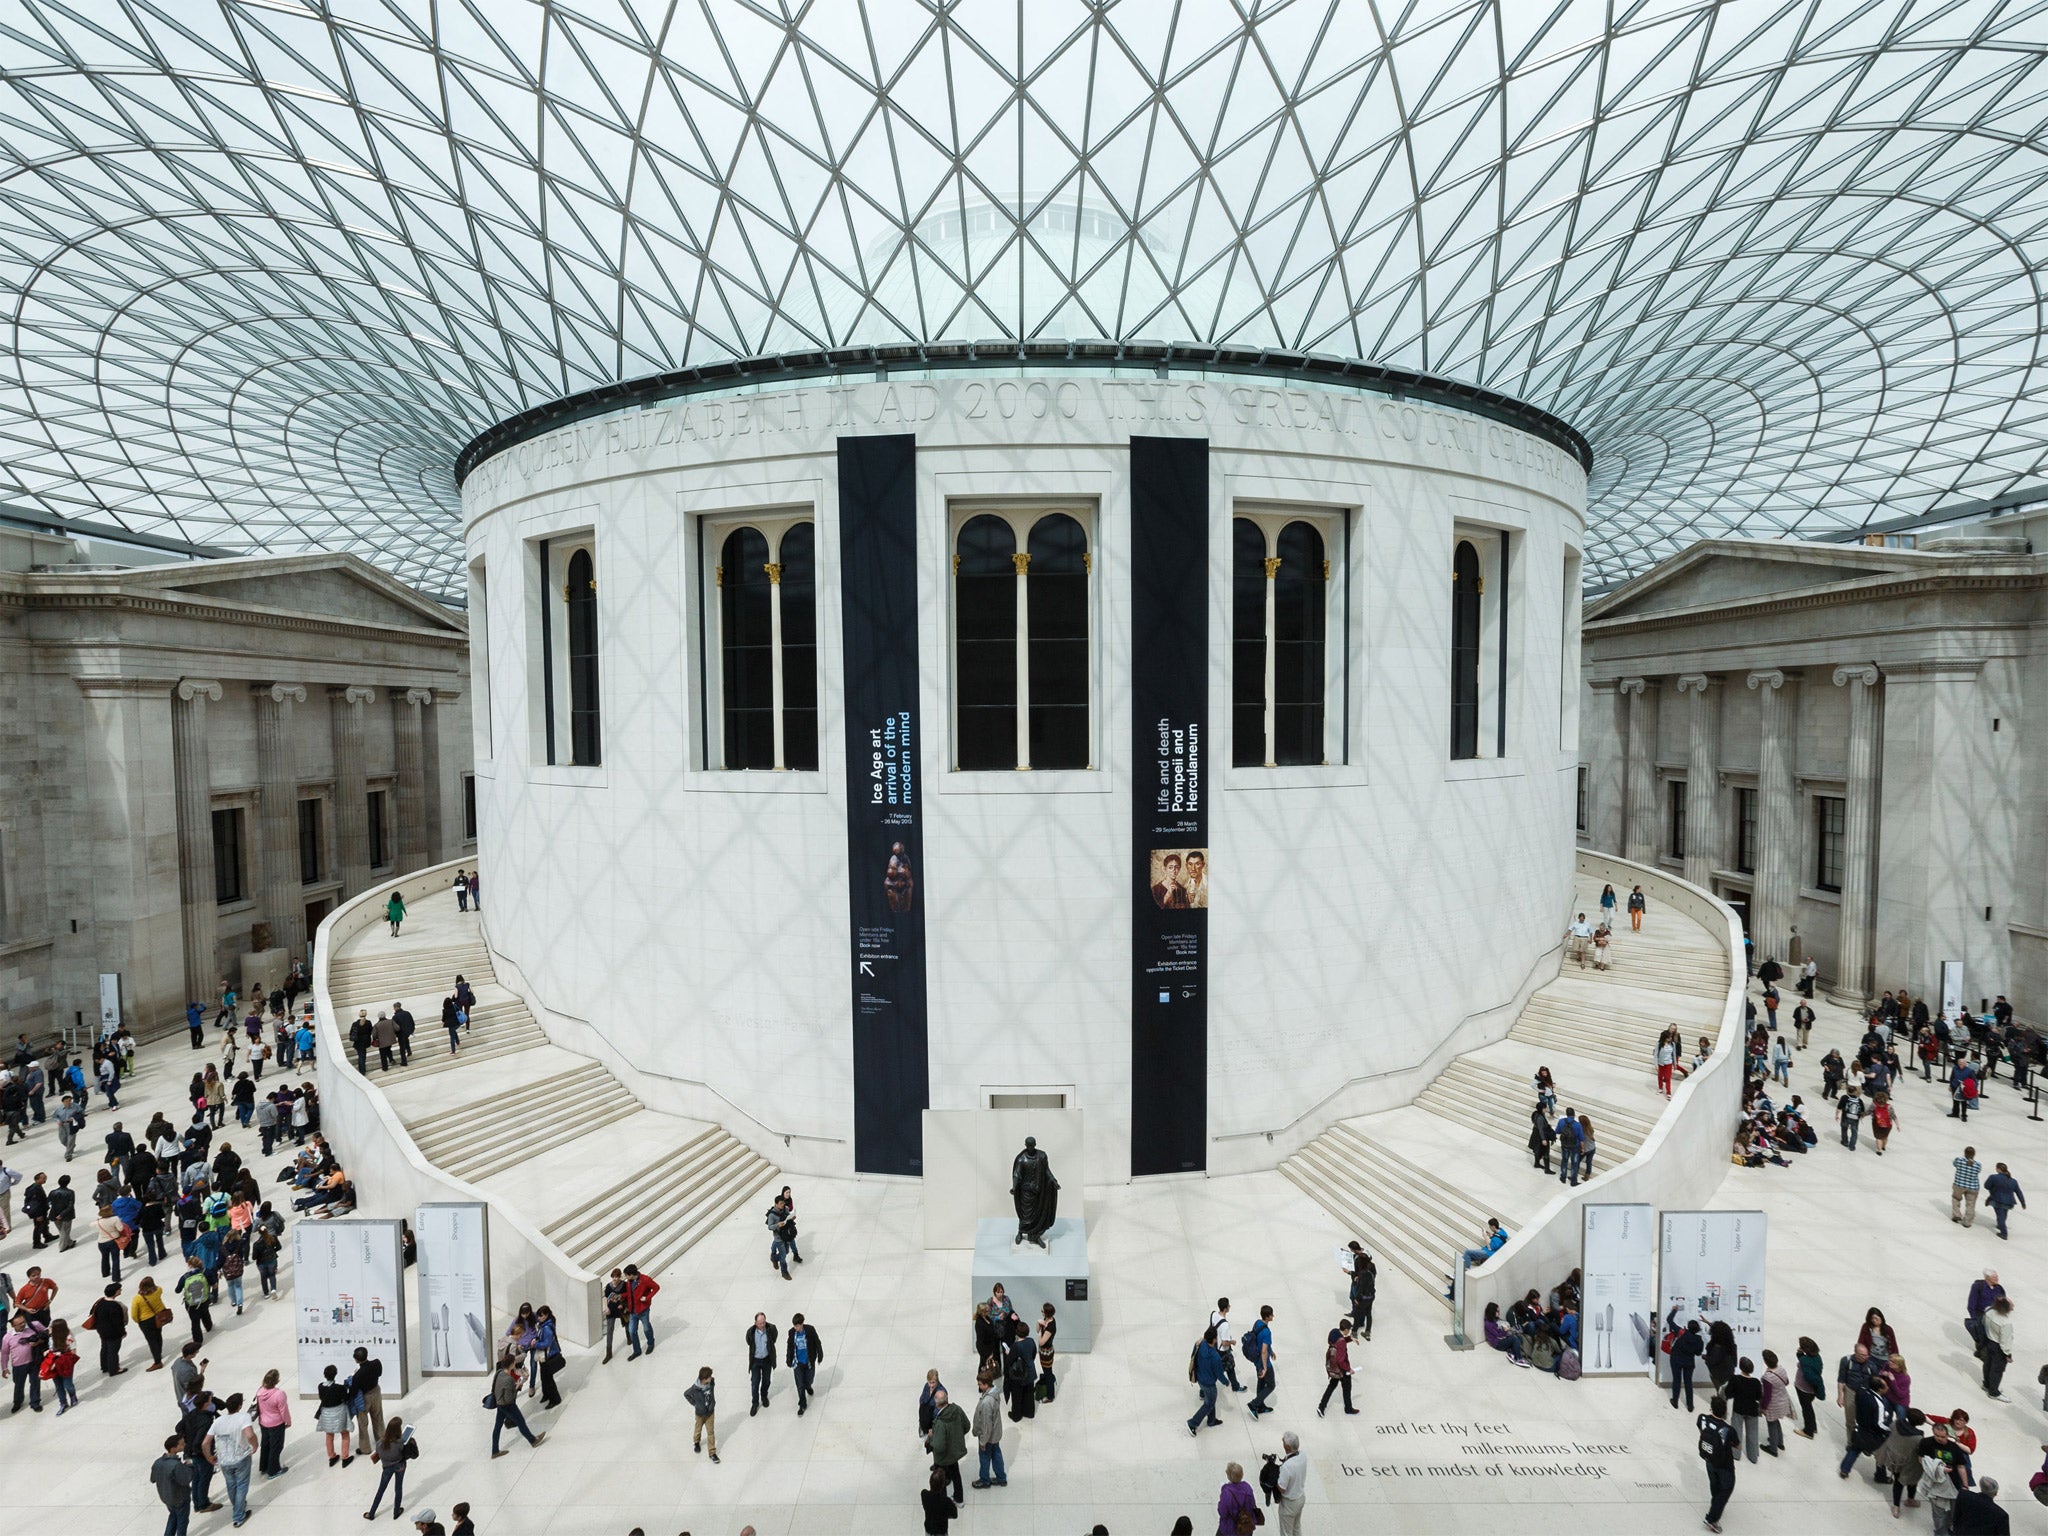 The British Museum Location